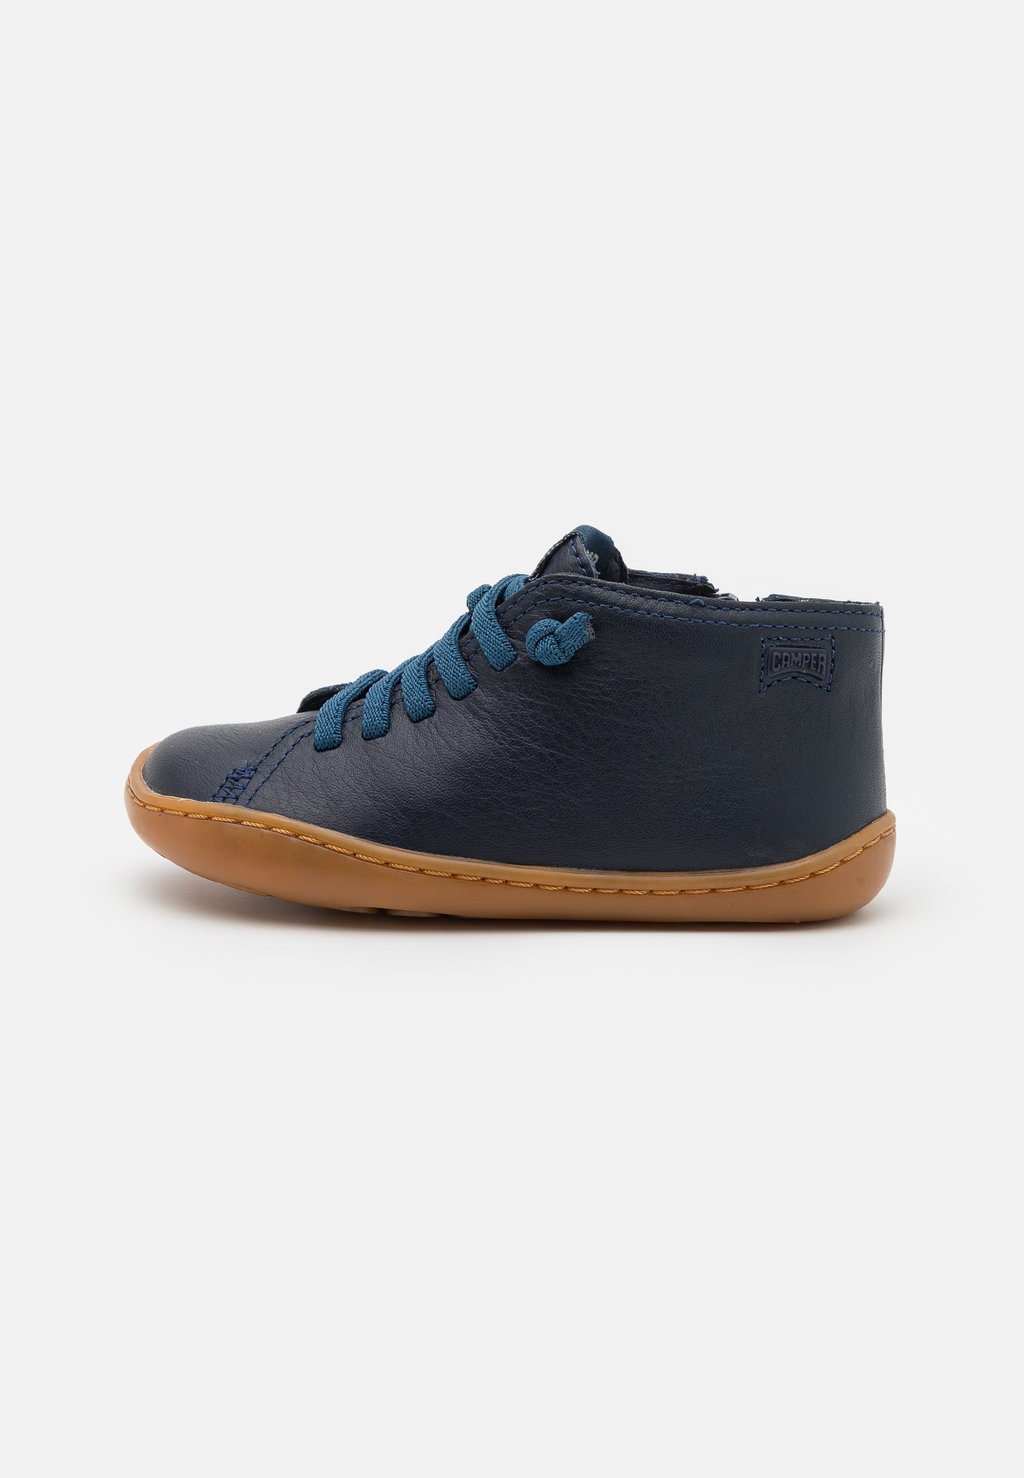 Спортивные туфли на шнуровке PEU CAMI Camper, цвет dunkelblau